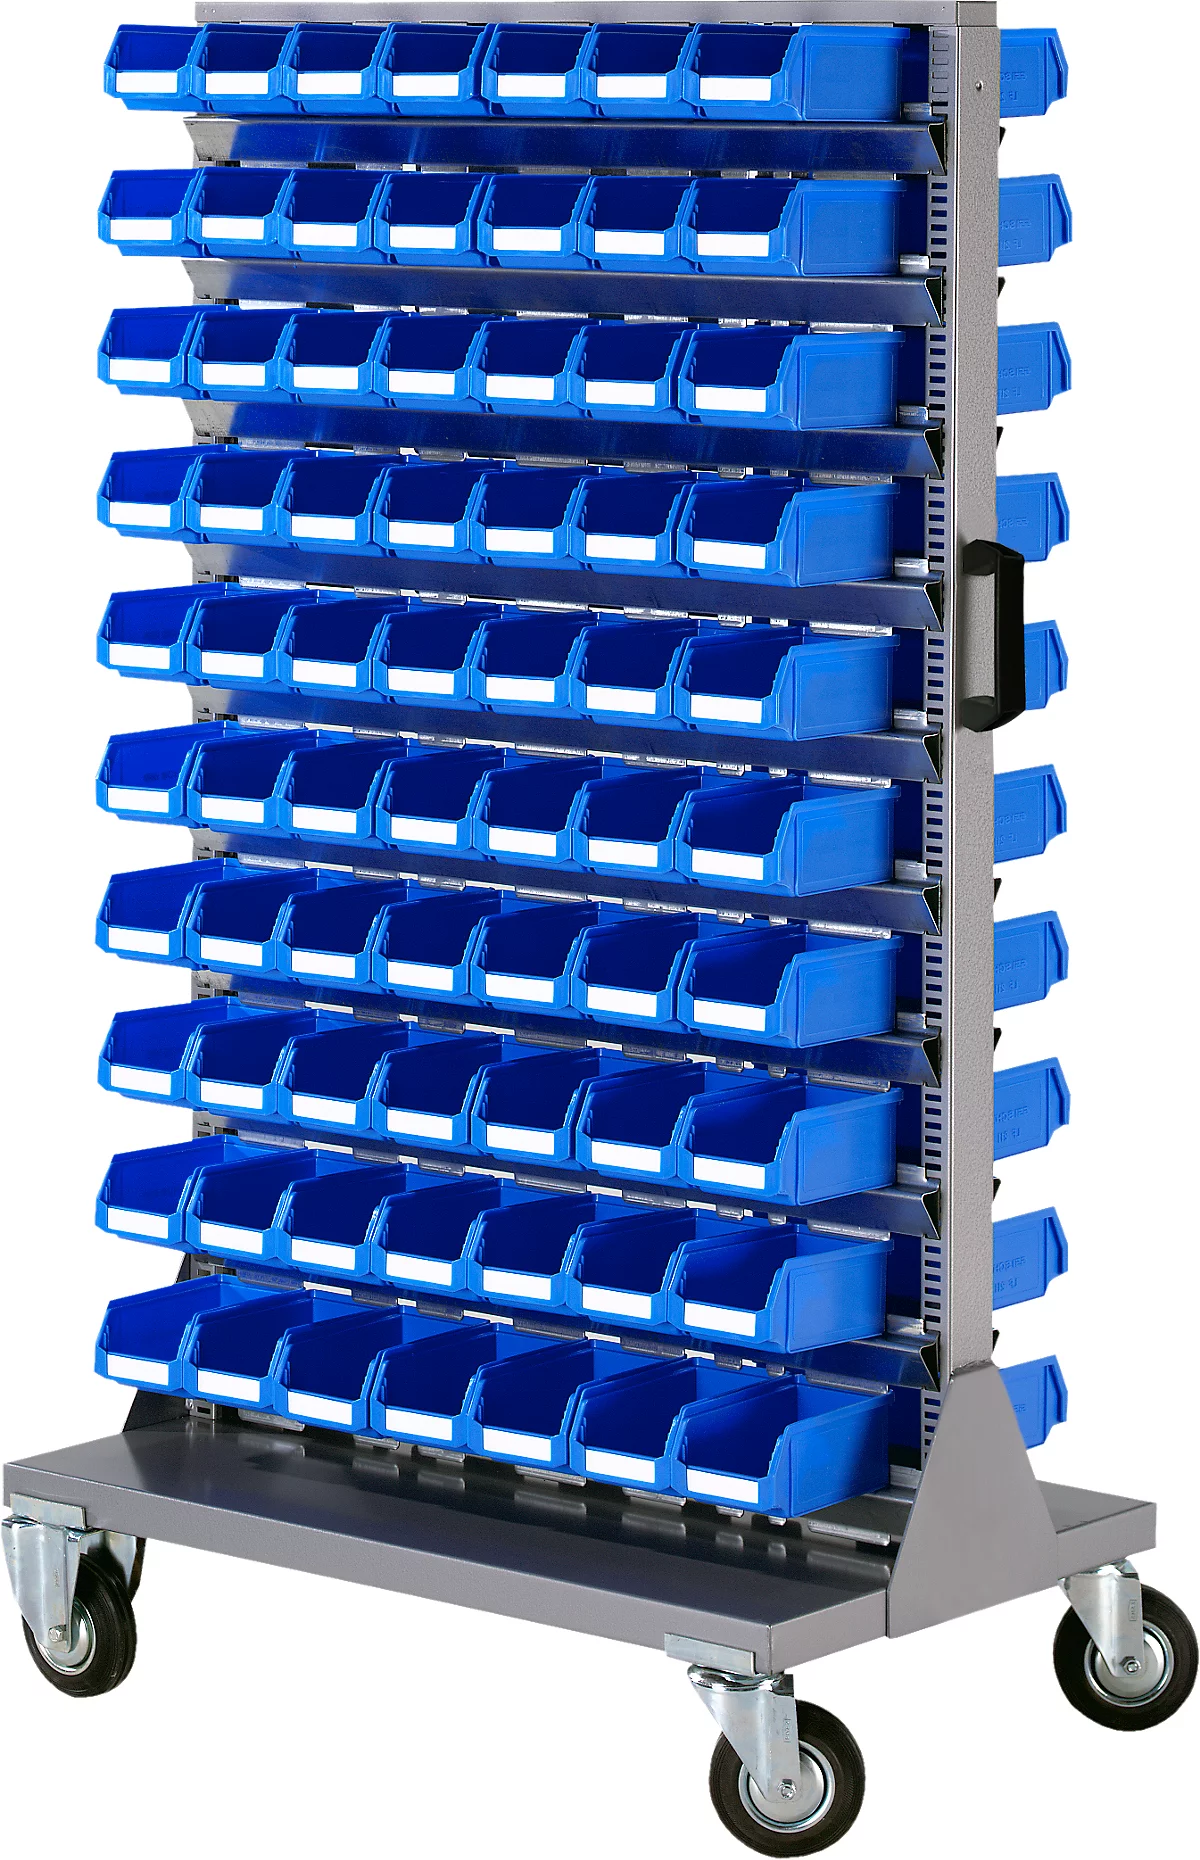 Almacén móvil de piezas pequeñas, apilable por 2 lados, incl. 140 cajones azules de frente abierto LF 211, ancho 825 x fondo 550 x alto 1450 mm, acero, gris